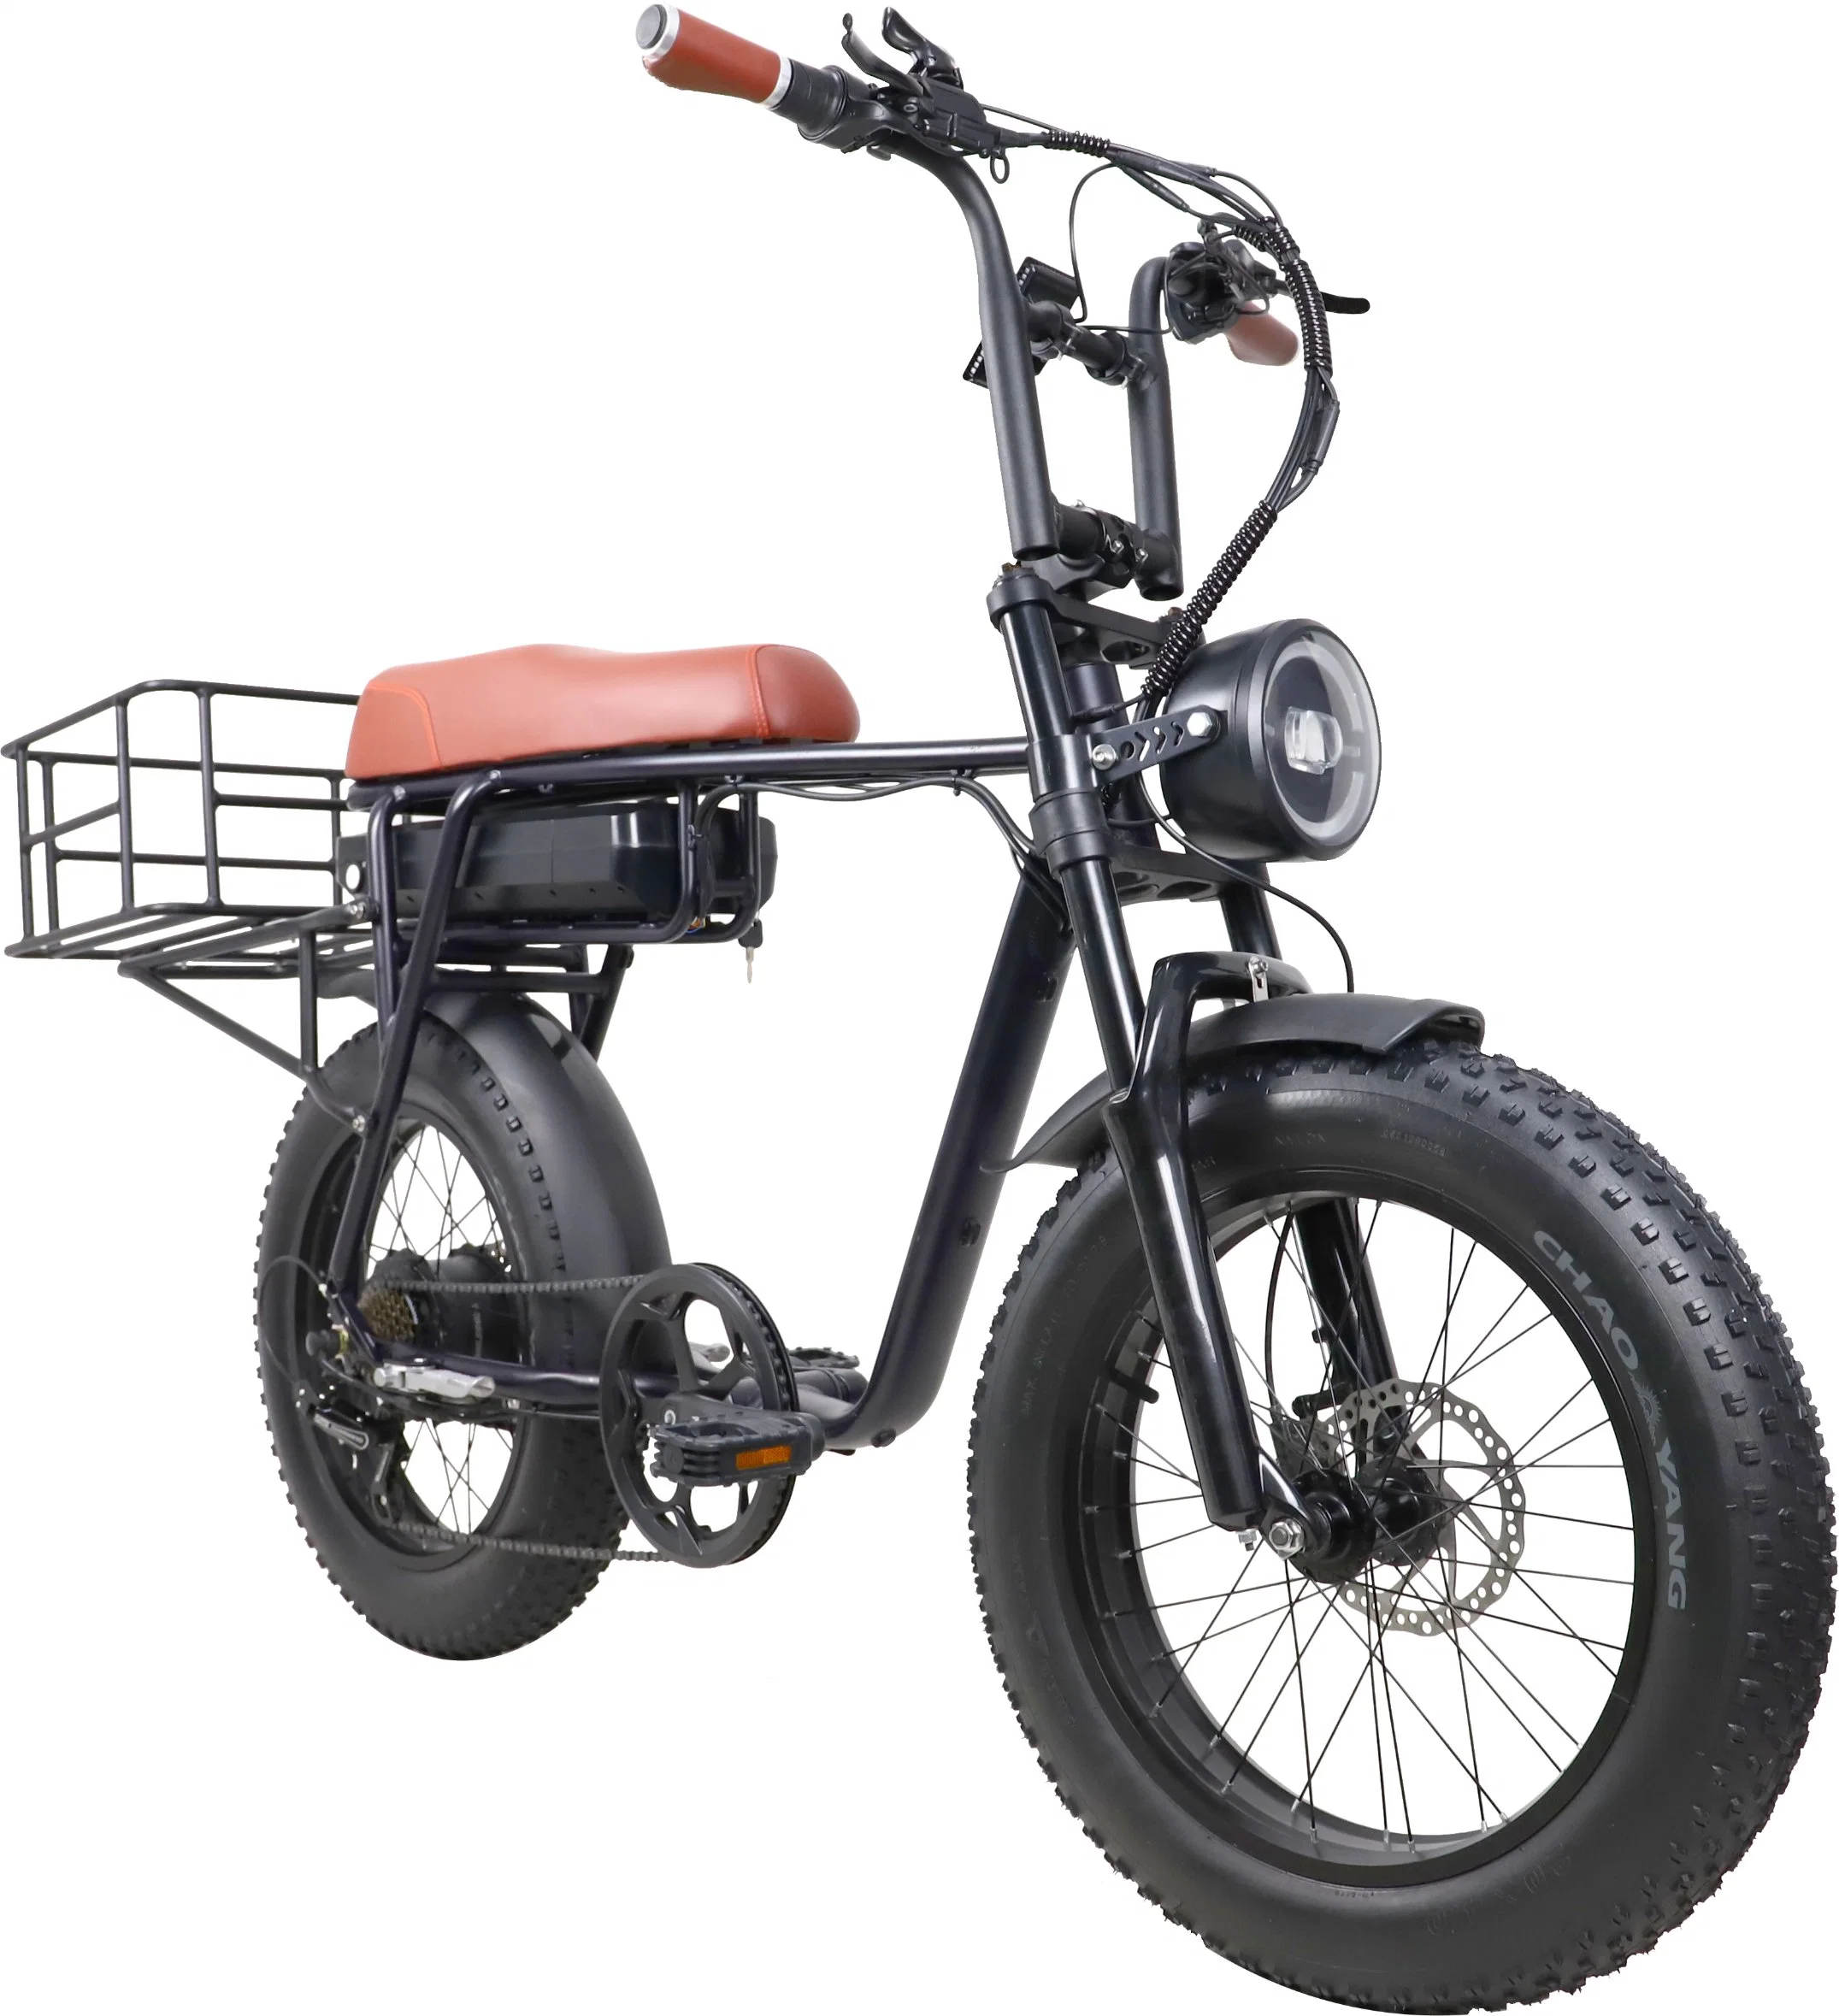 ATV Vélo électrique 750W 1000W Moteur 48V 20 pouces Pneu gras Vélo électrique longue portée hors route Affichage MID Drive Moto Frein hydraulique Vélo électrique.